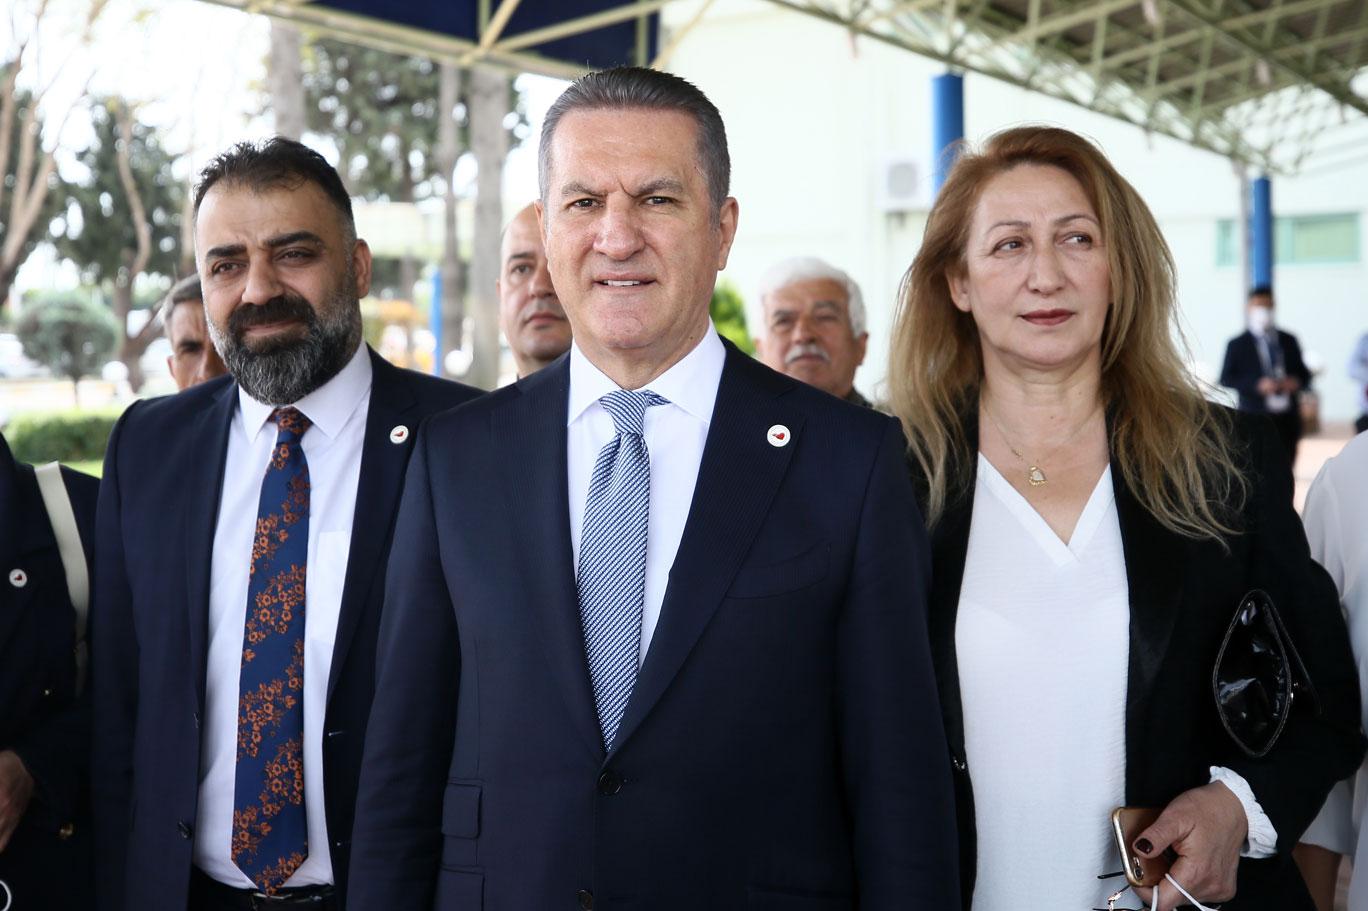 Adana’da konuşan TDP Genel Başkanı Sarıgül, genel af çağrısını tekrarladı